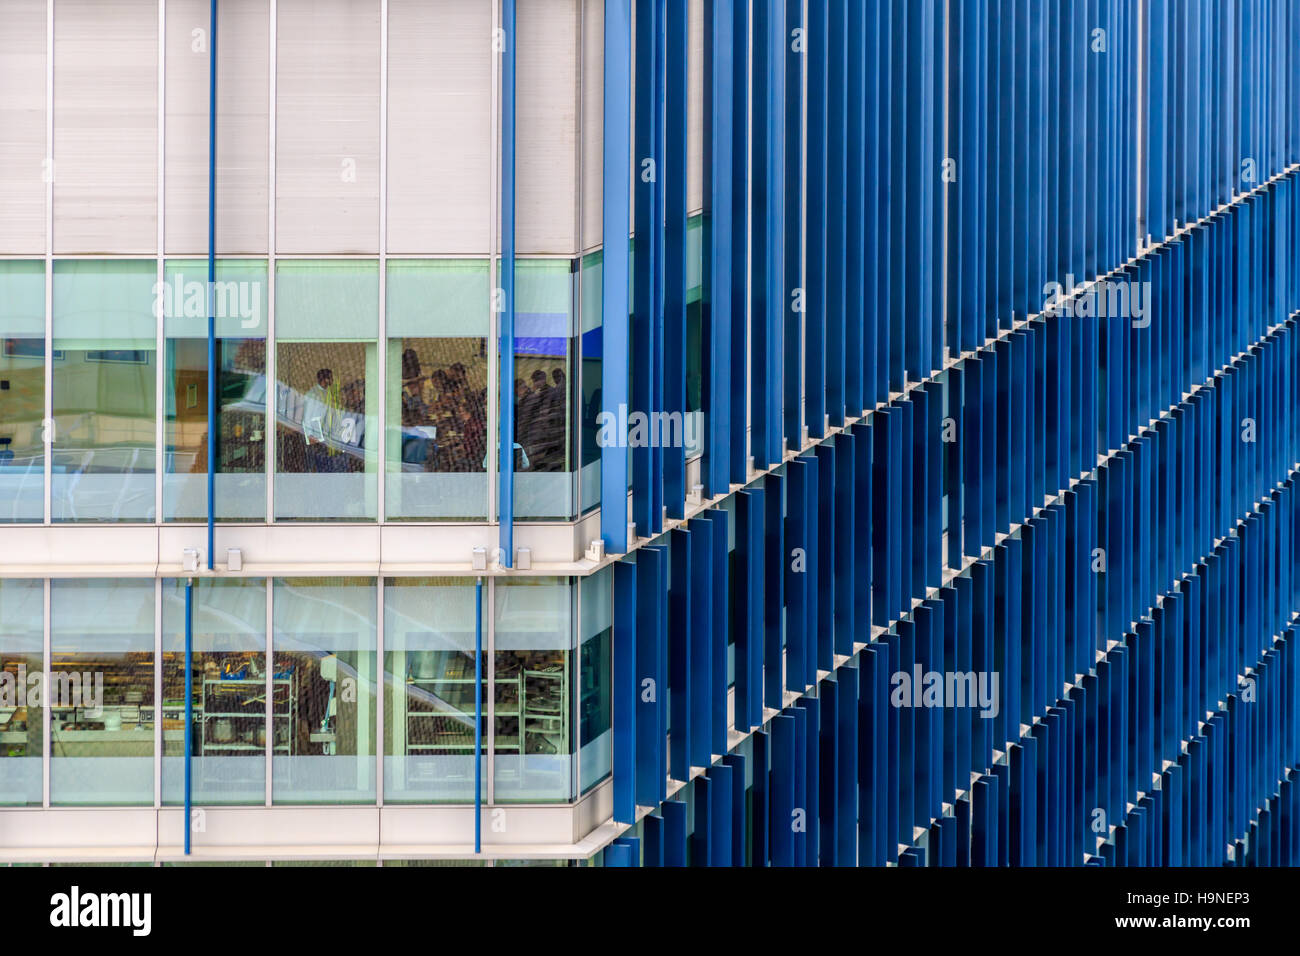 Immeuble de bureaux modernes avec motif blue fin Banque D'Images